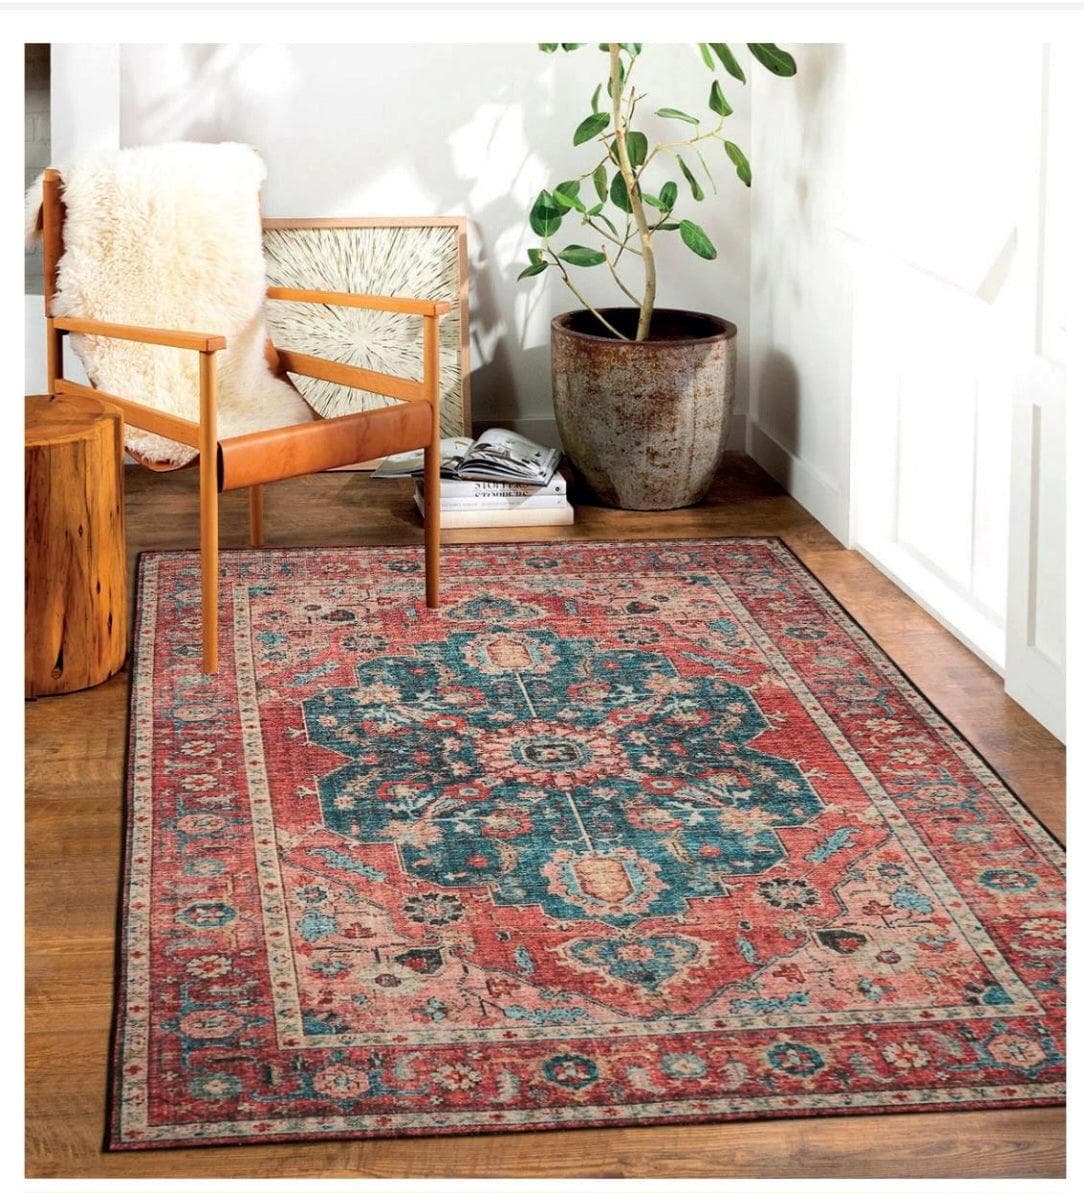 geldof-rugs-rugs-skellig-series-rugs-5-colour-styles-to-choose-from-54319276982611